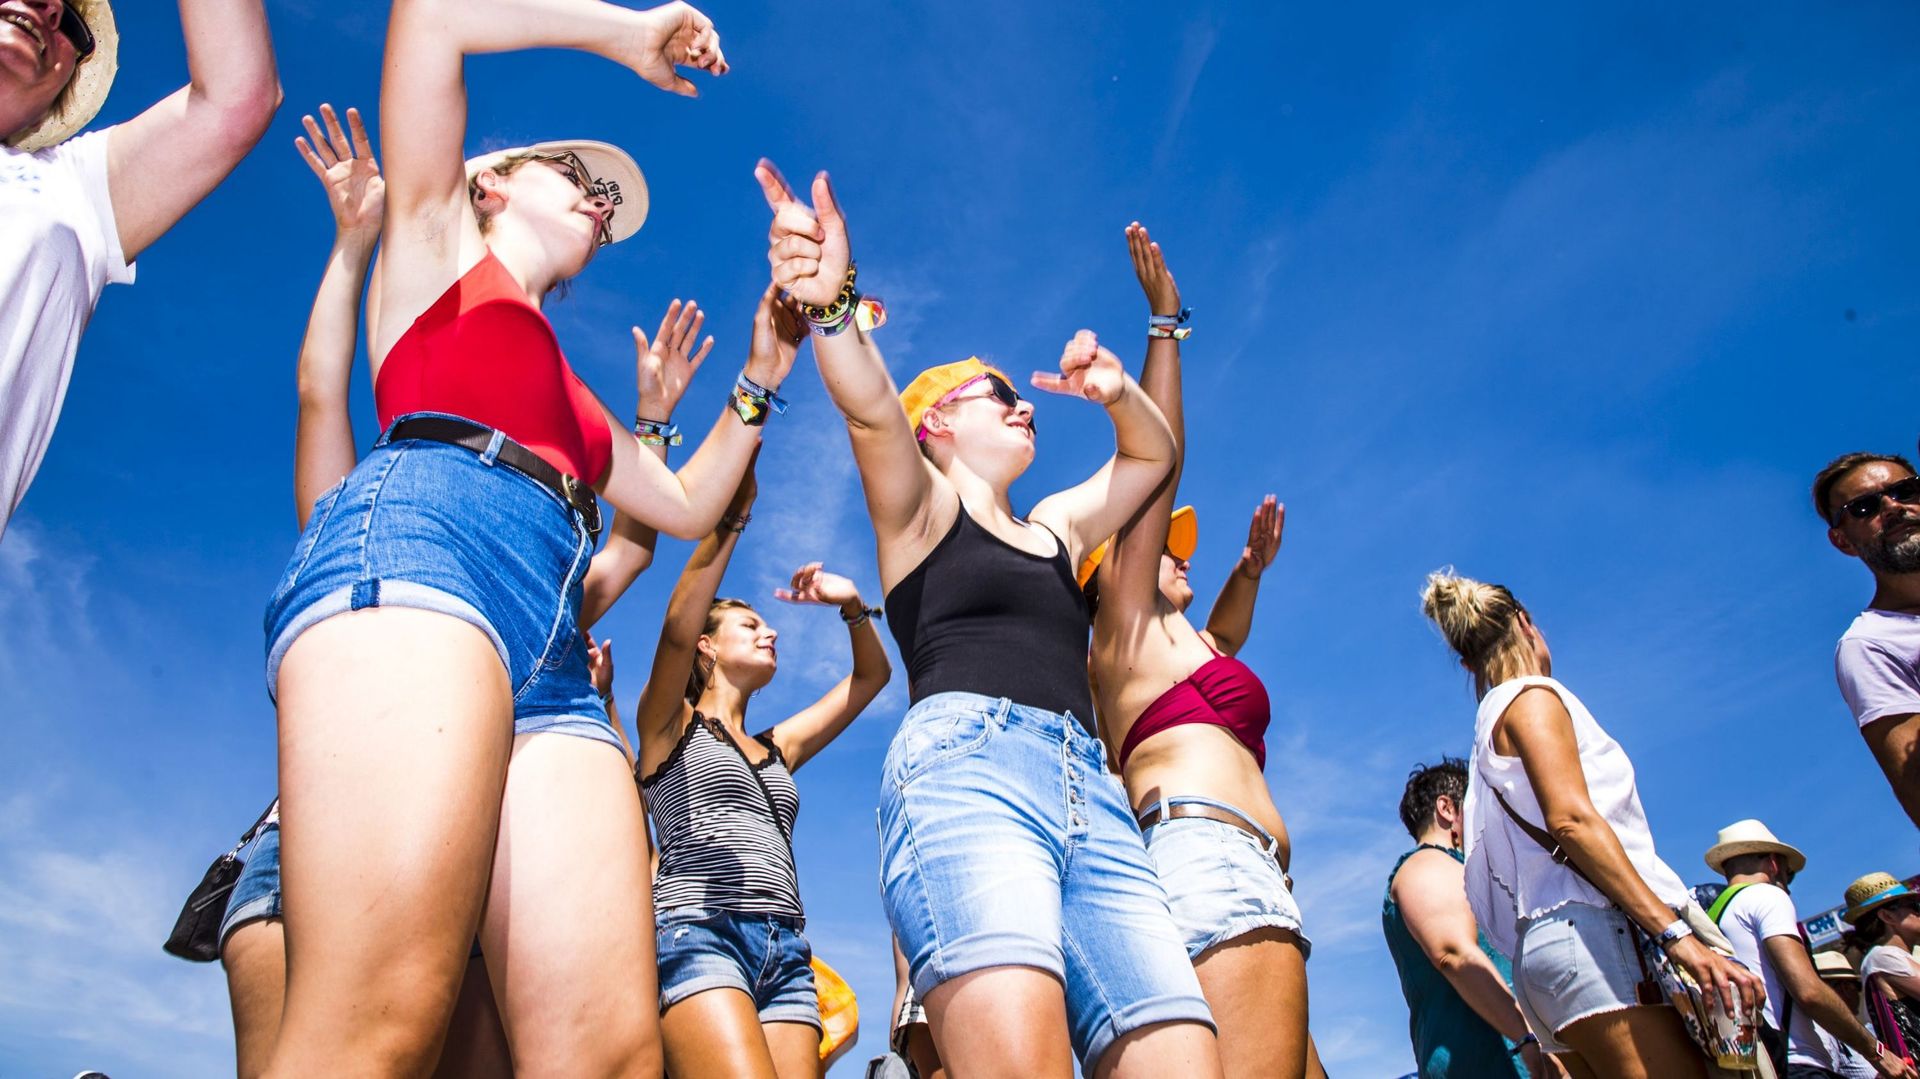 1663 jeunes âgés de 16 à 24 ans ont été sondés par Plan International Belgique afin de savoir ce qu’il convenait de faire pour enrayer le harcèlement sexuel dans les festivals